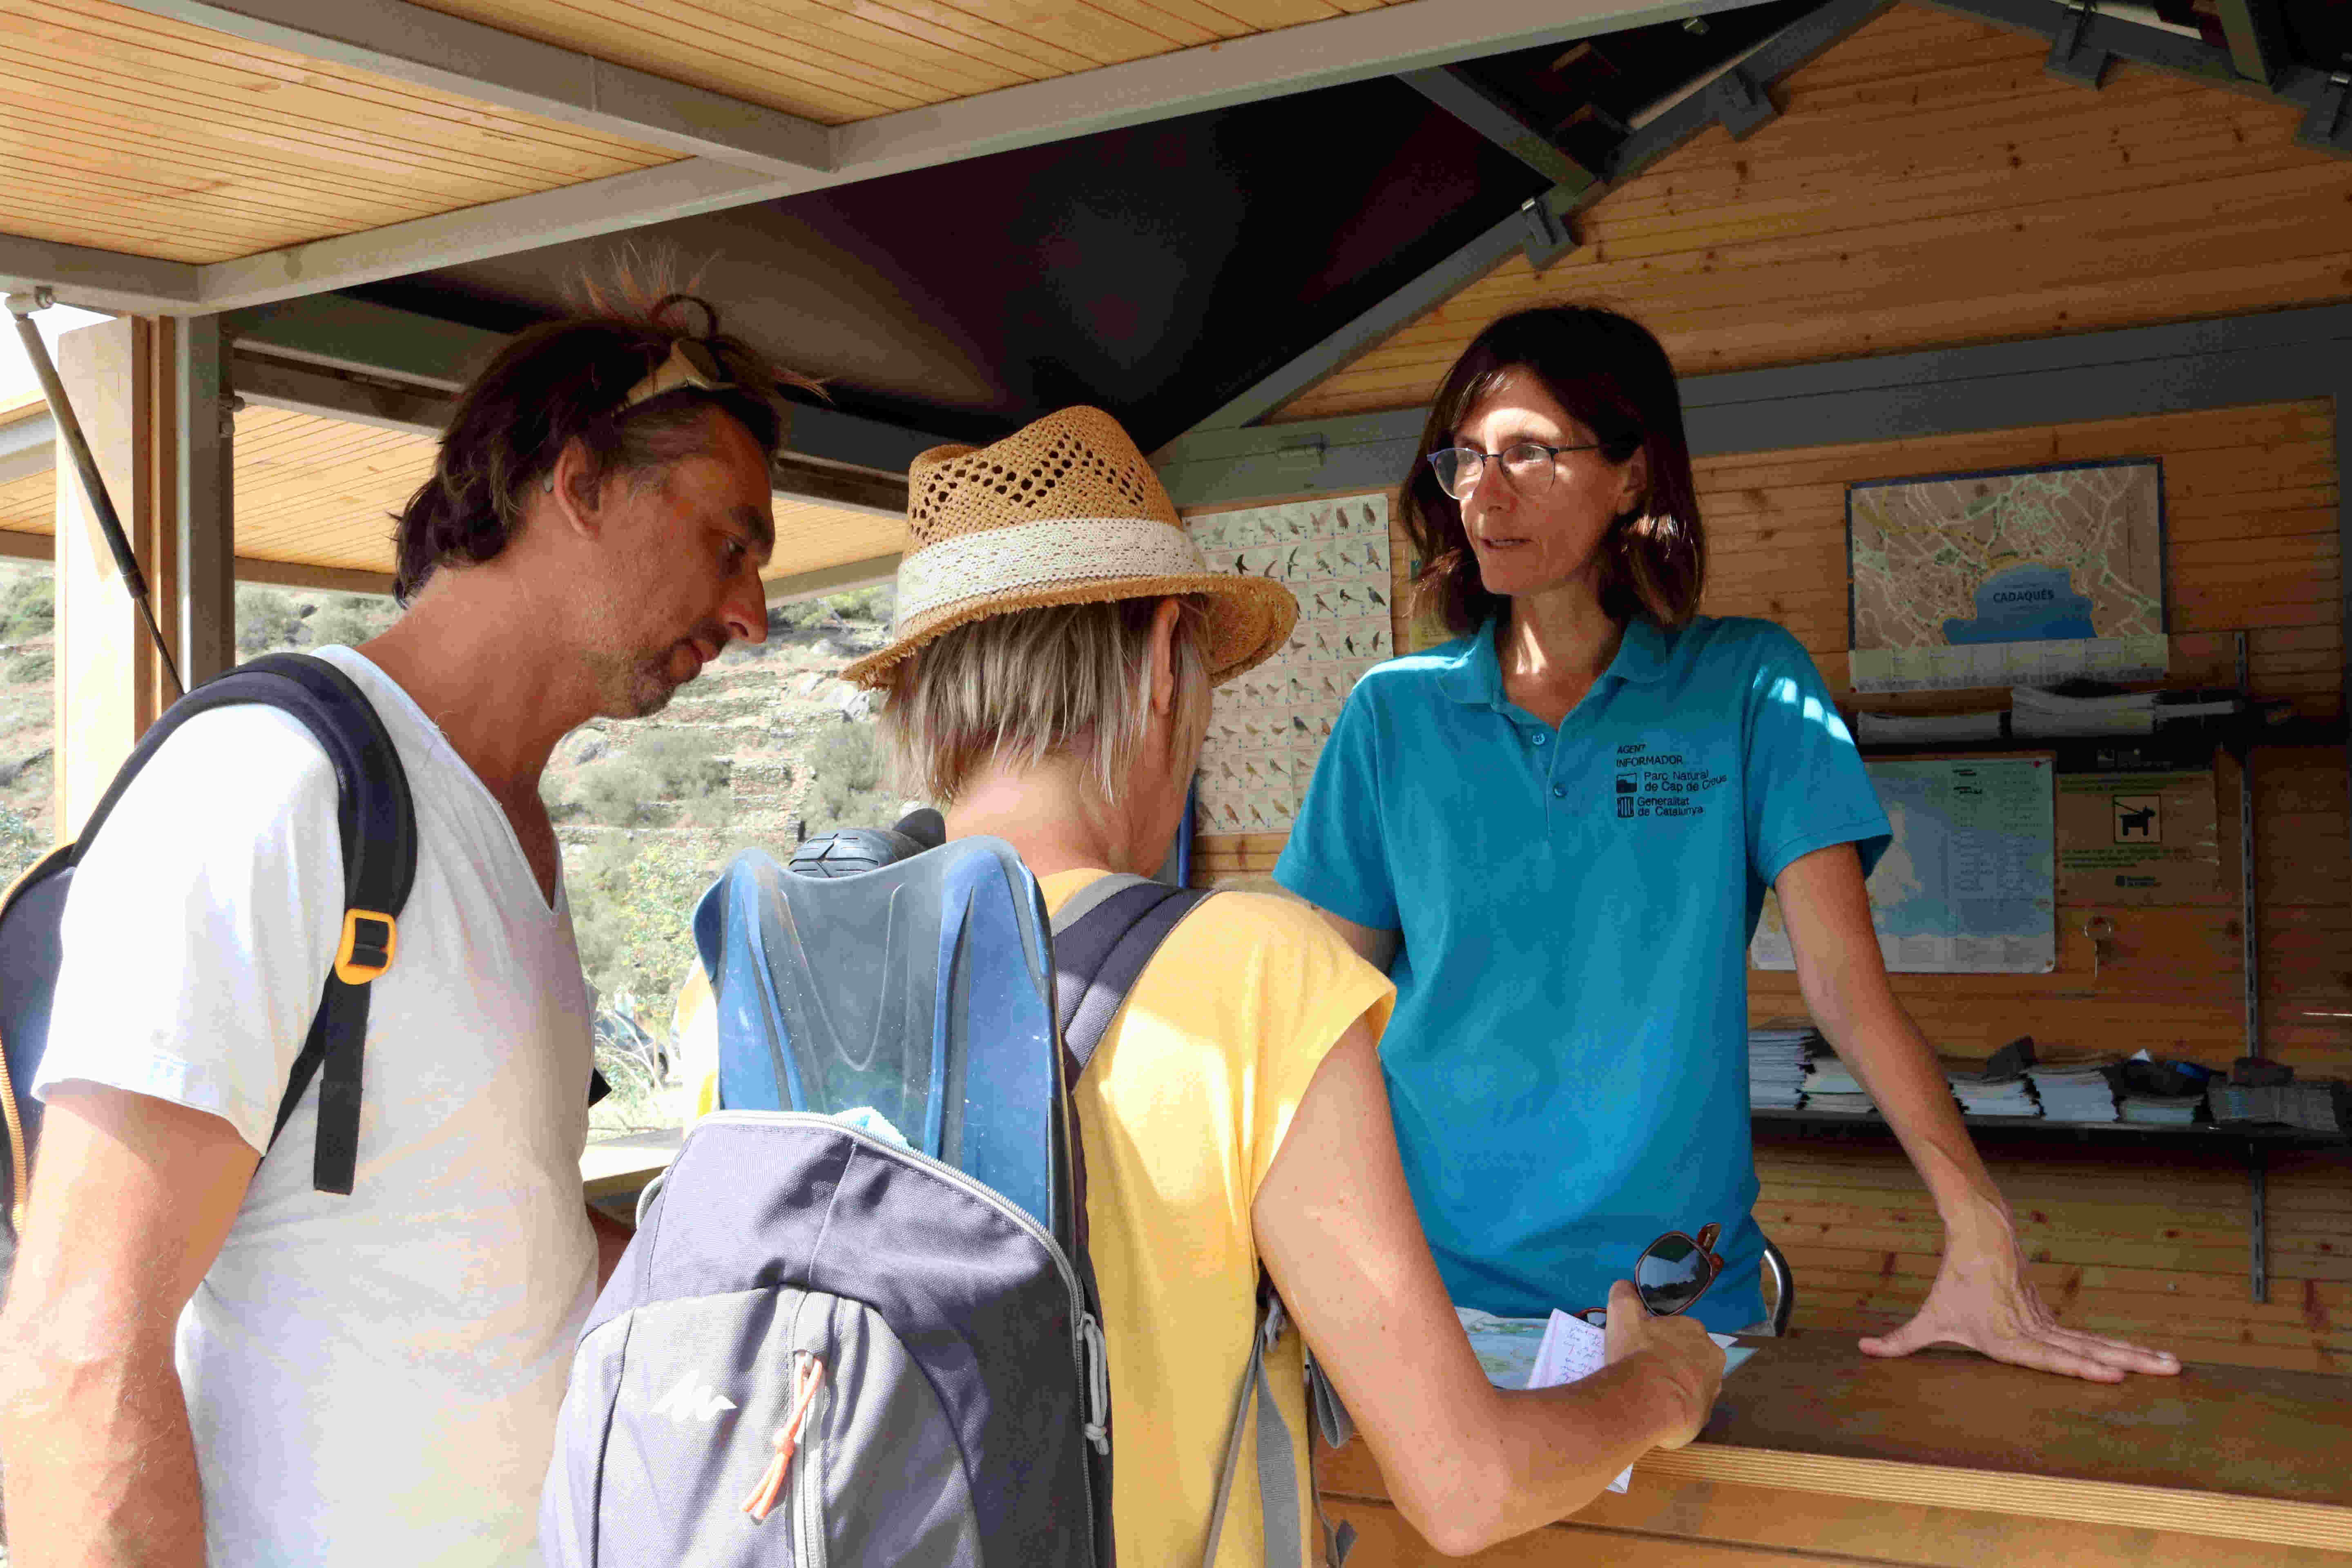 Pedagogia als parcs naturals: 47 informadors consciencien els visitants de com actuar en espais protegits